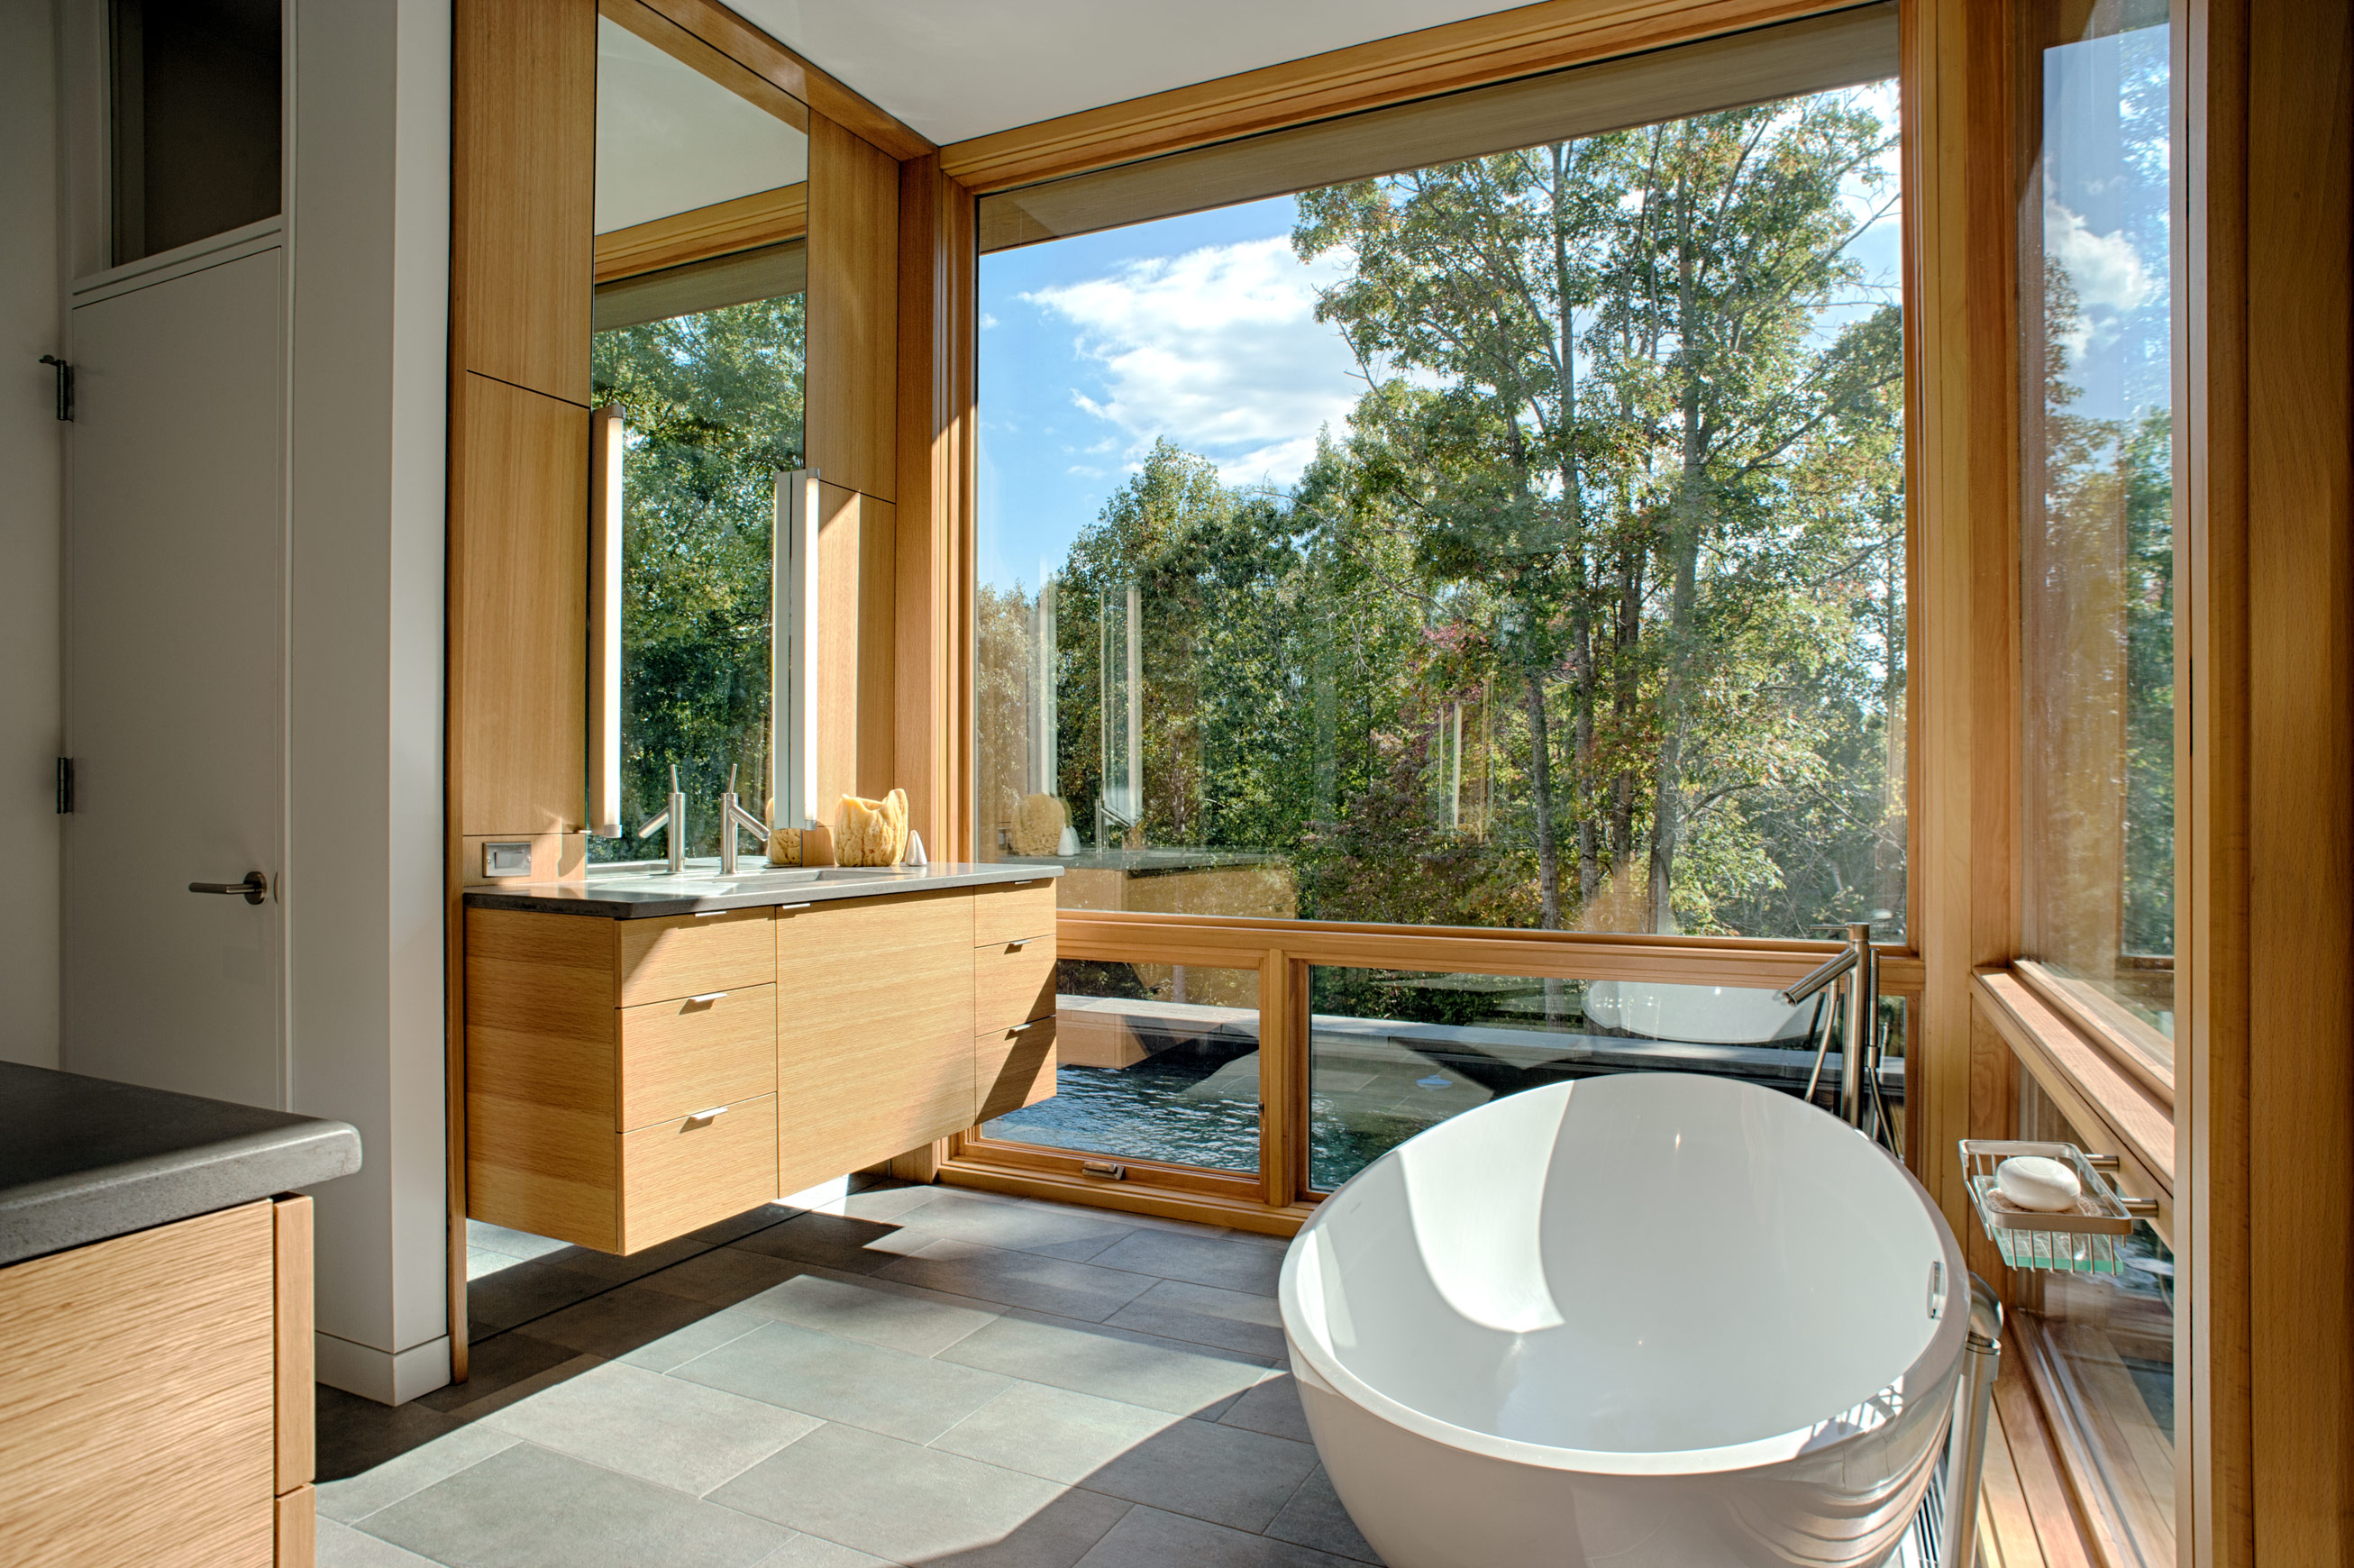 Ванна с большим окном. Ванная с панорамным окном. Ванная комната с панорамным окном. Ванная с панорамным окном в частном доме. Ванная комната с большим окном.